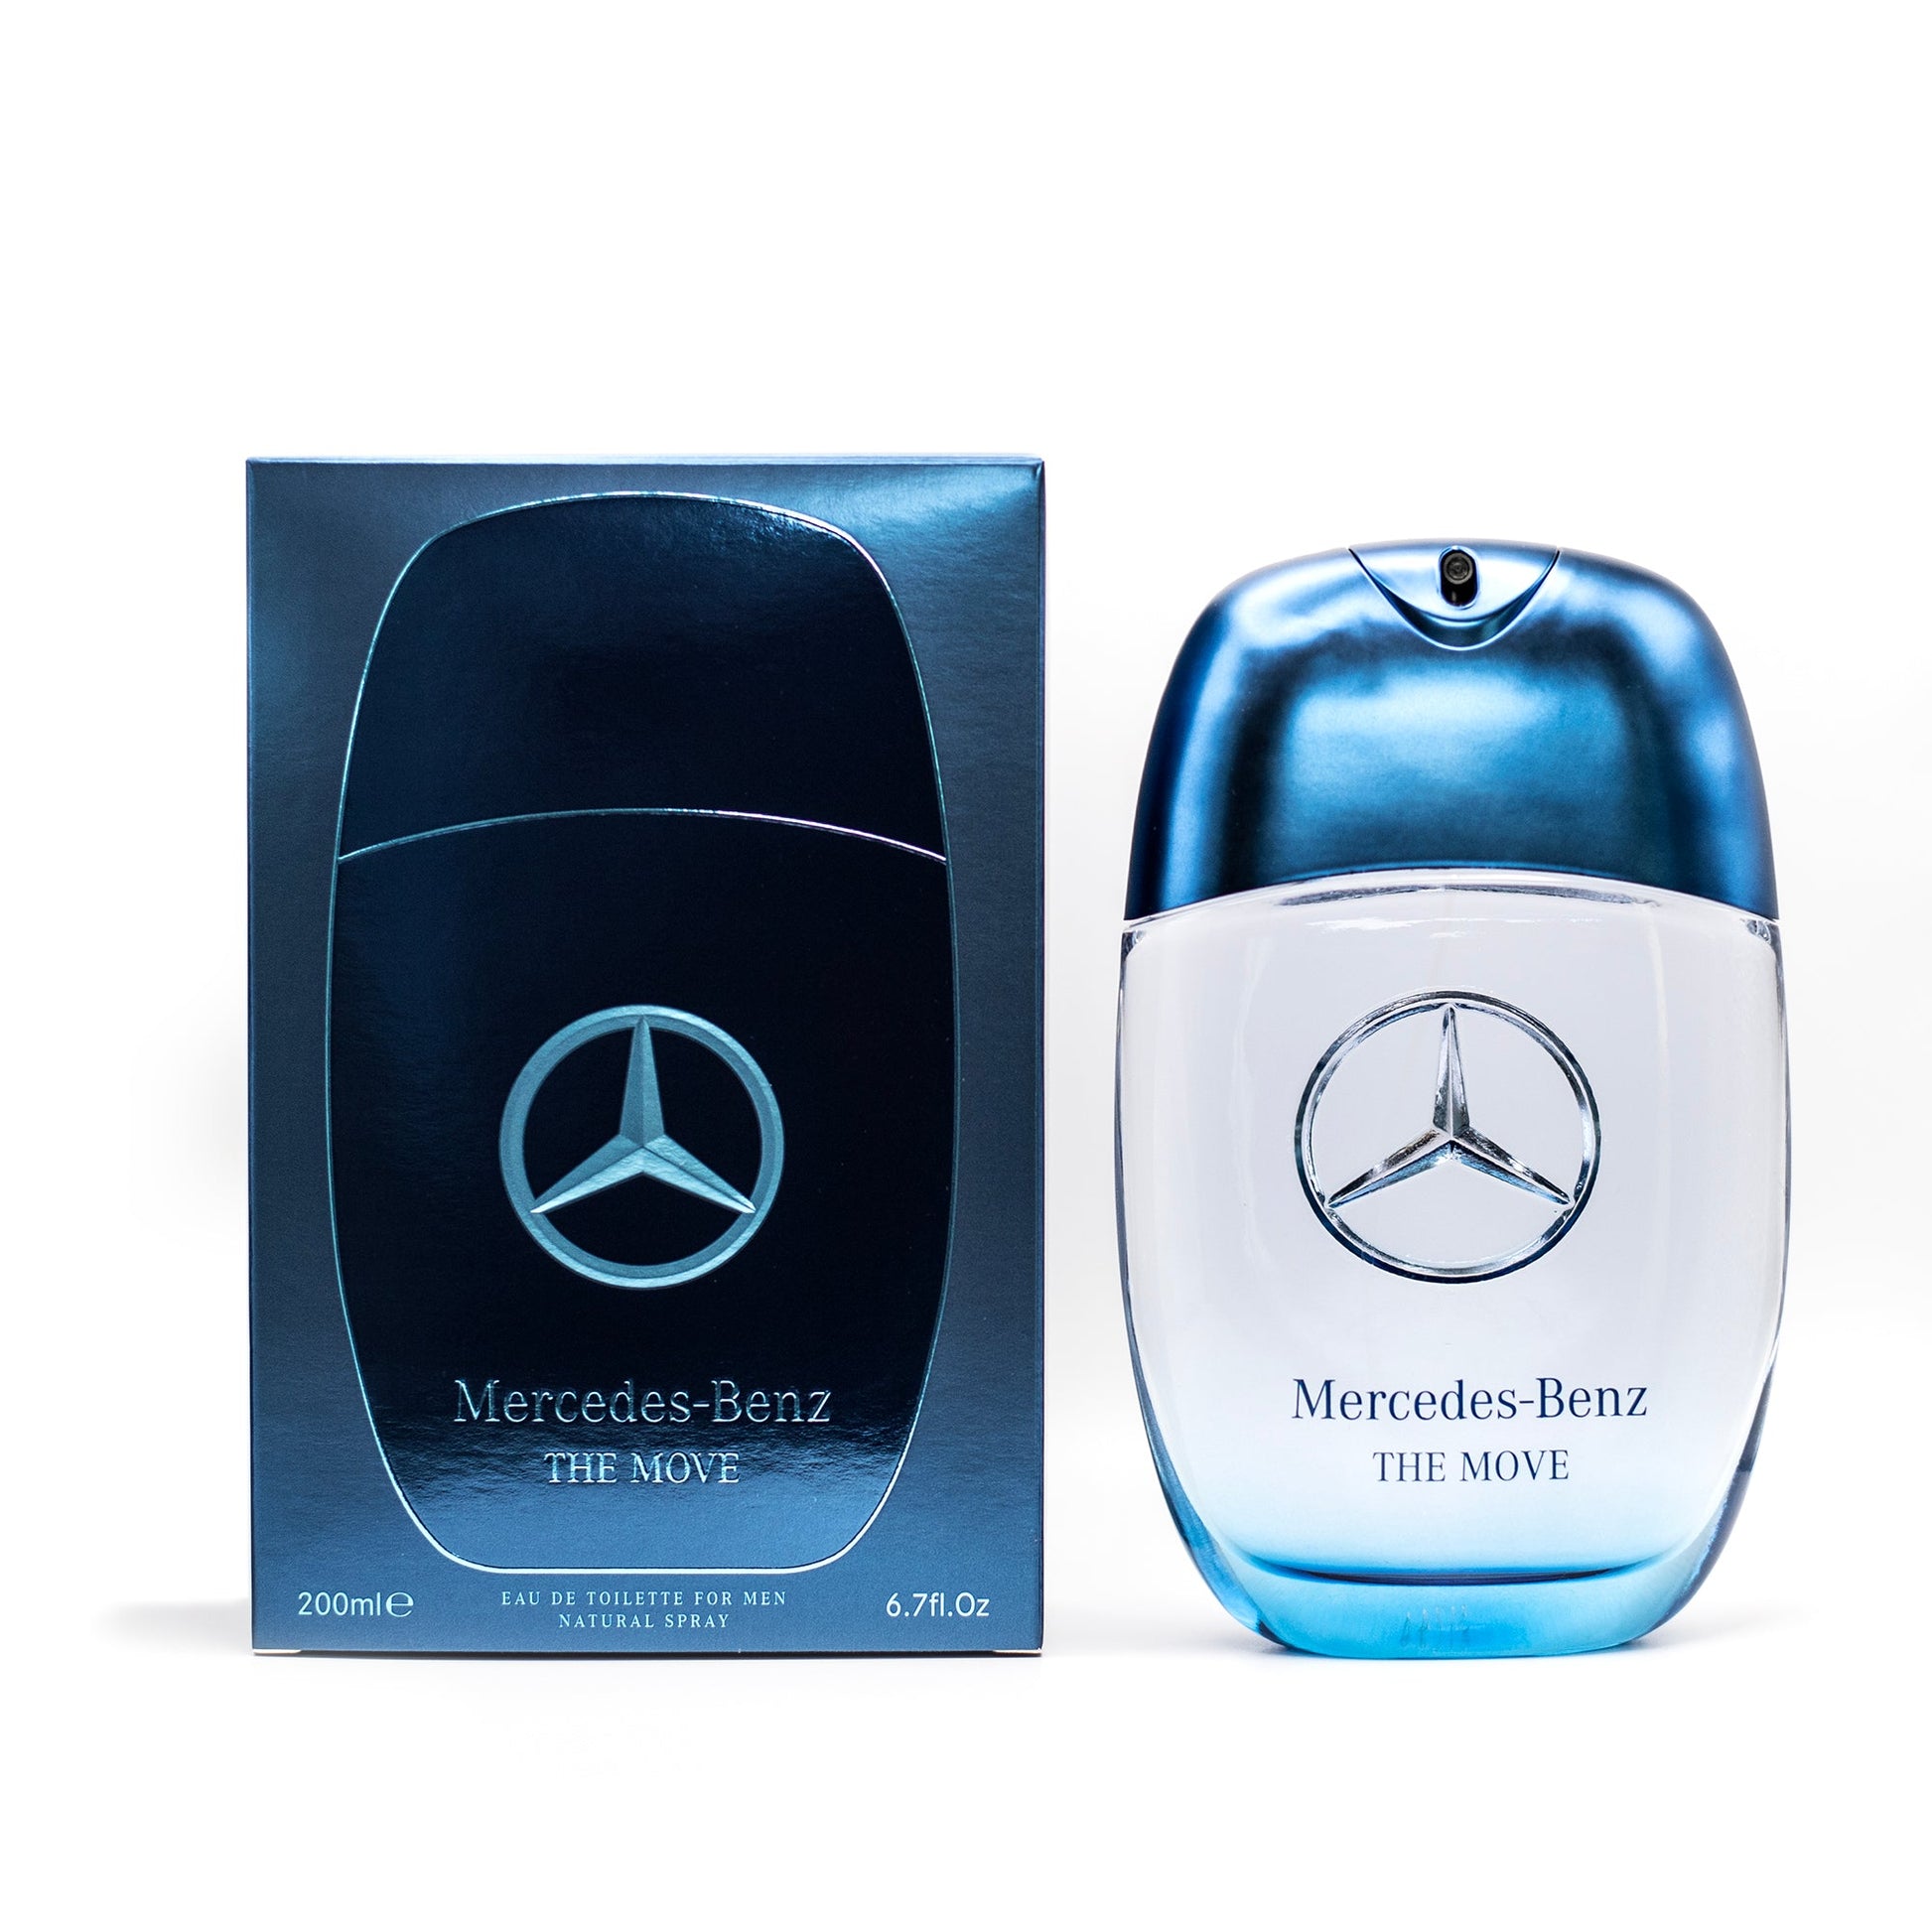 The Move Eau de Toilette Spray for Men by Mercedes-Benz, Product image 3